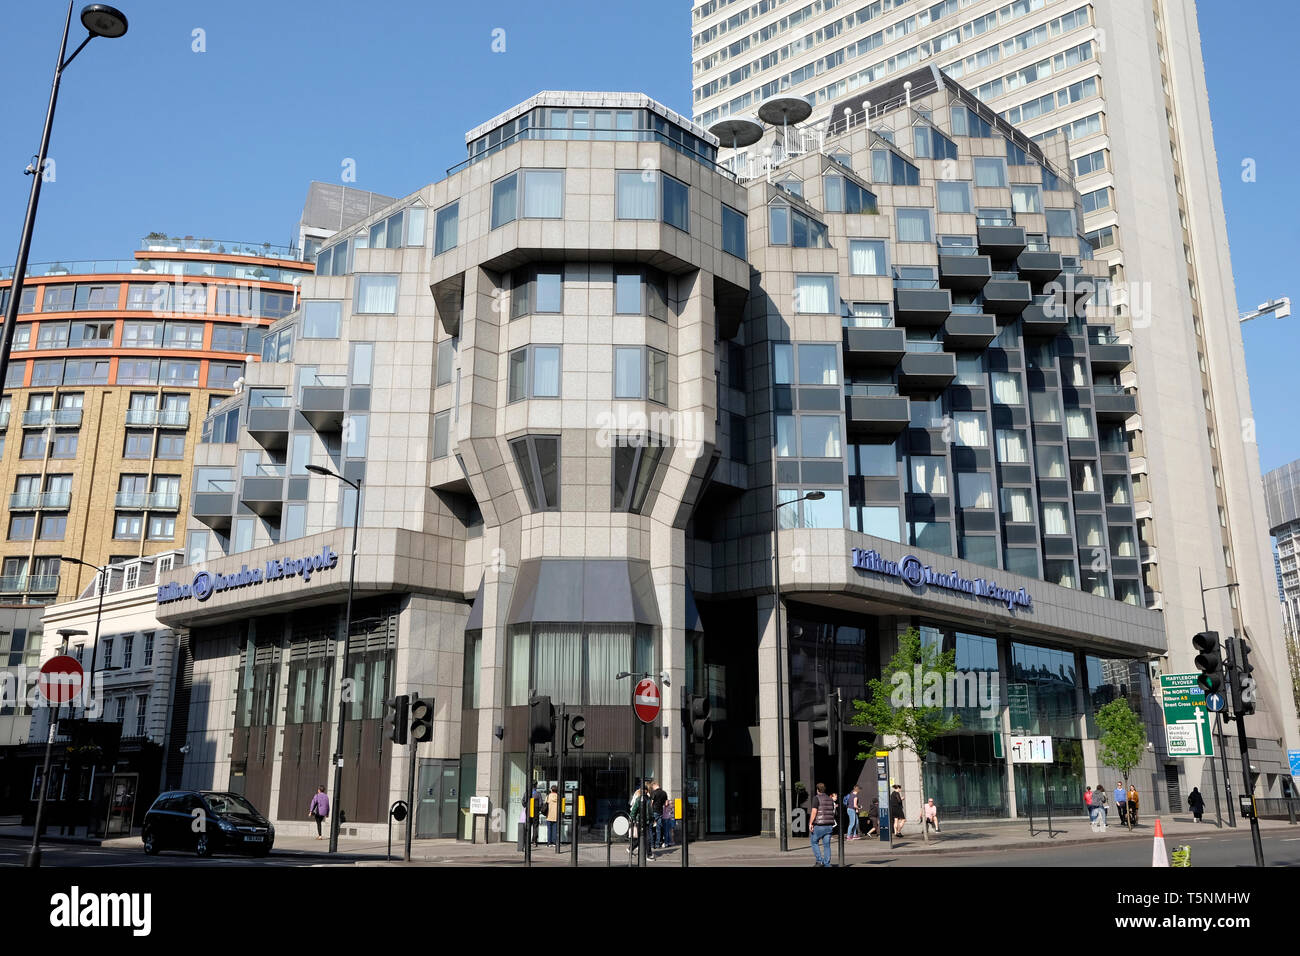 Einen allgemeinen Überblick über das Hilton London Metropole Hotel in die Edgware Road, London Stockfoto